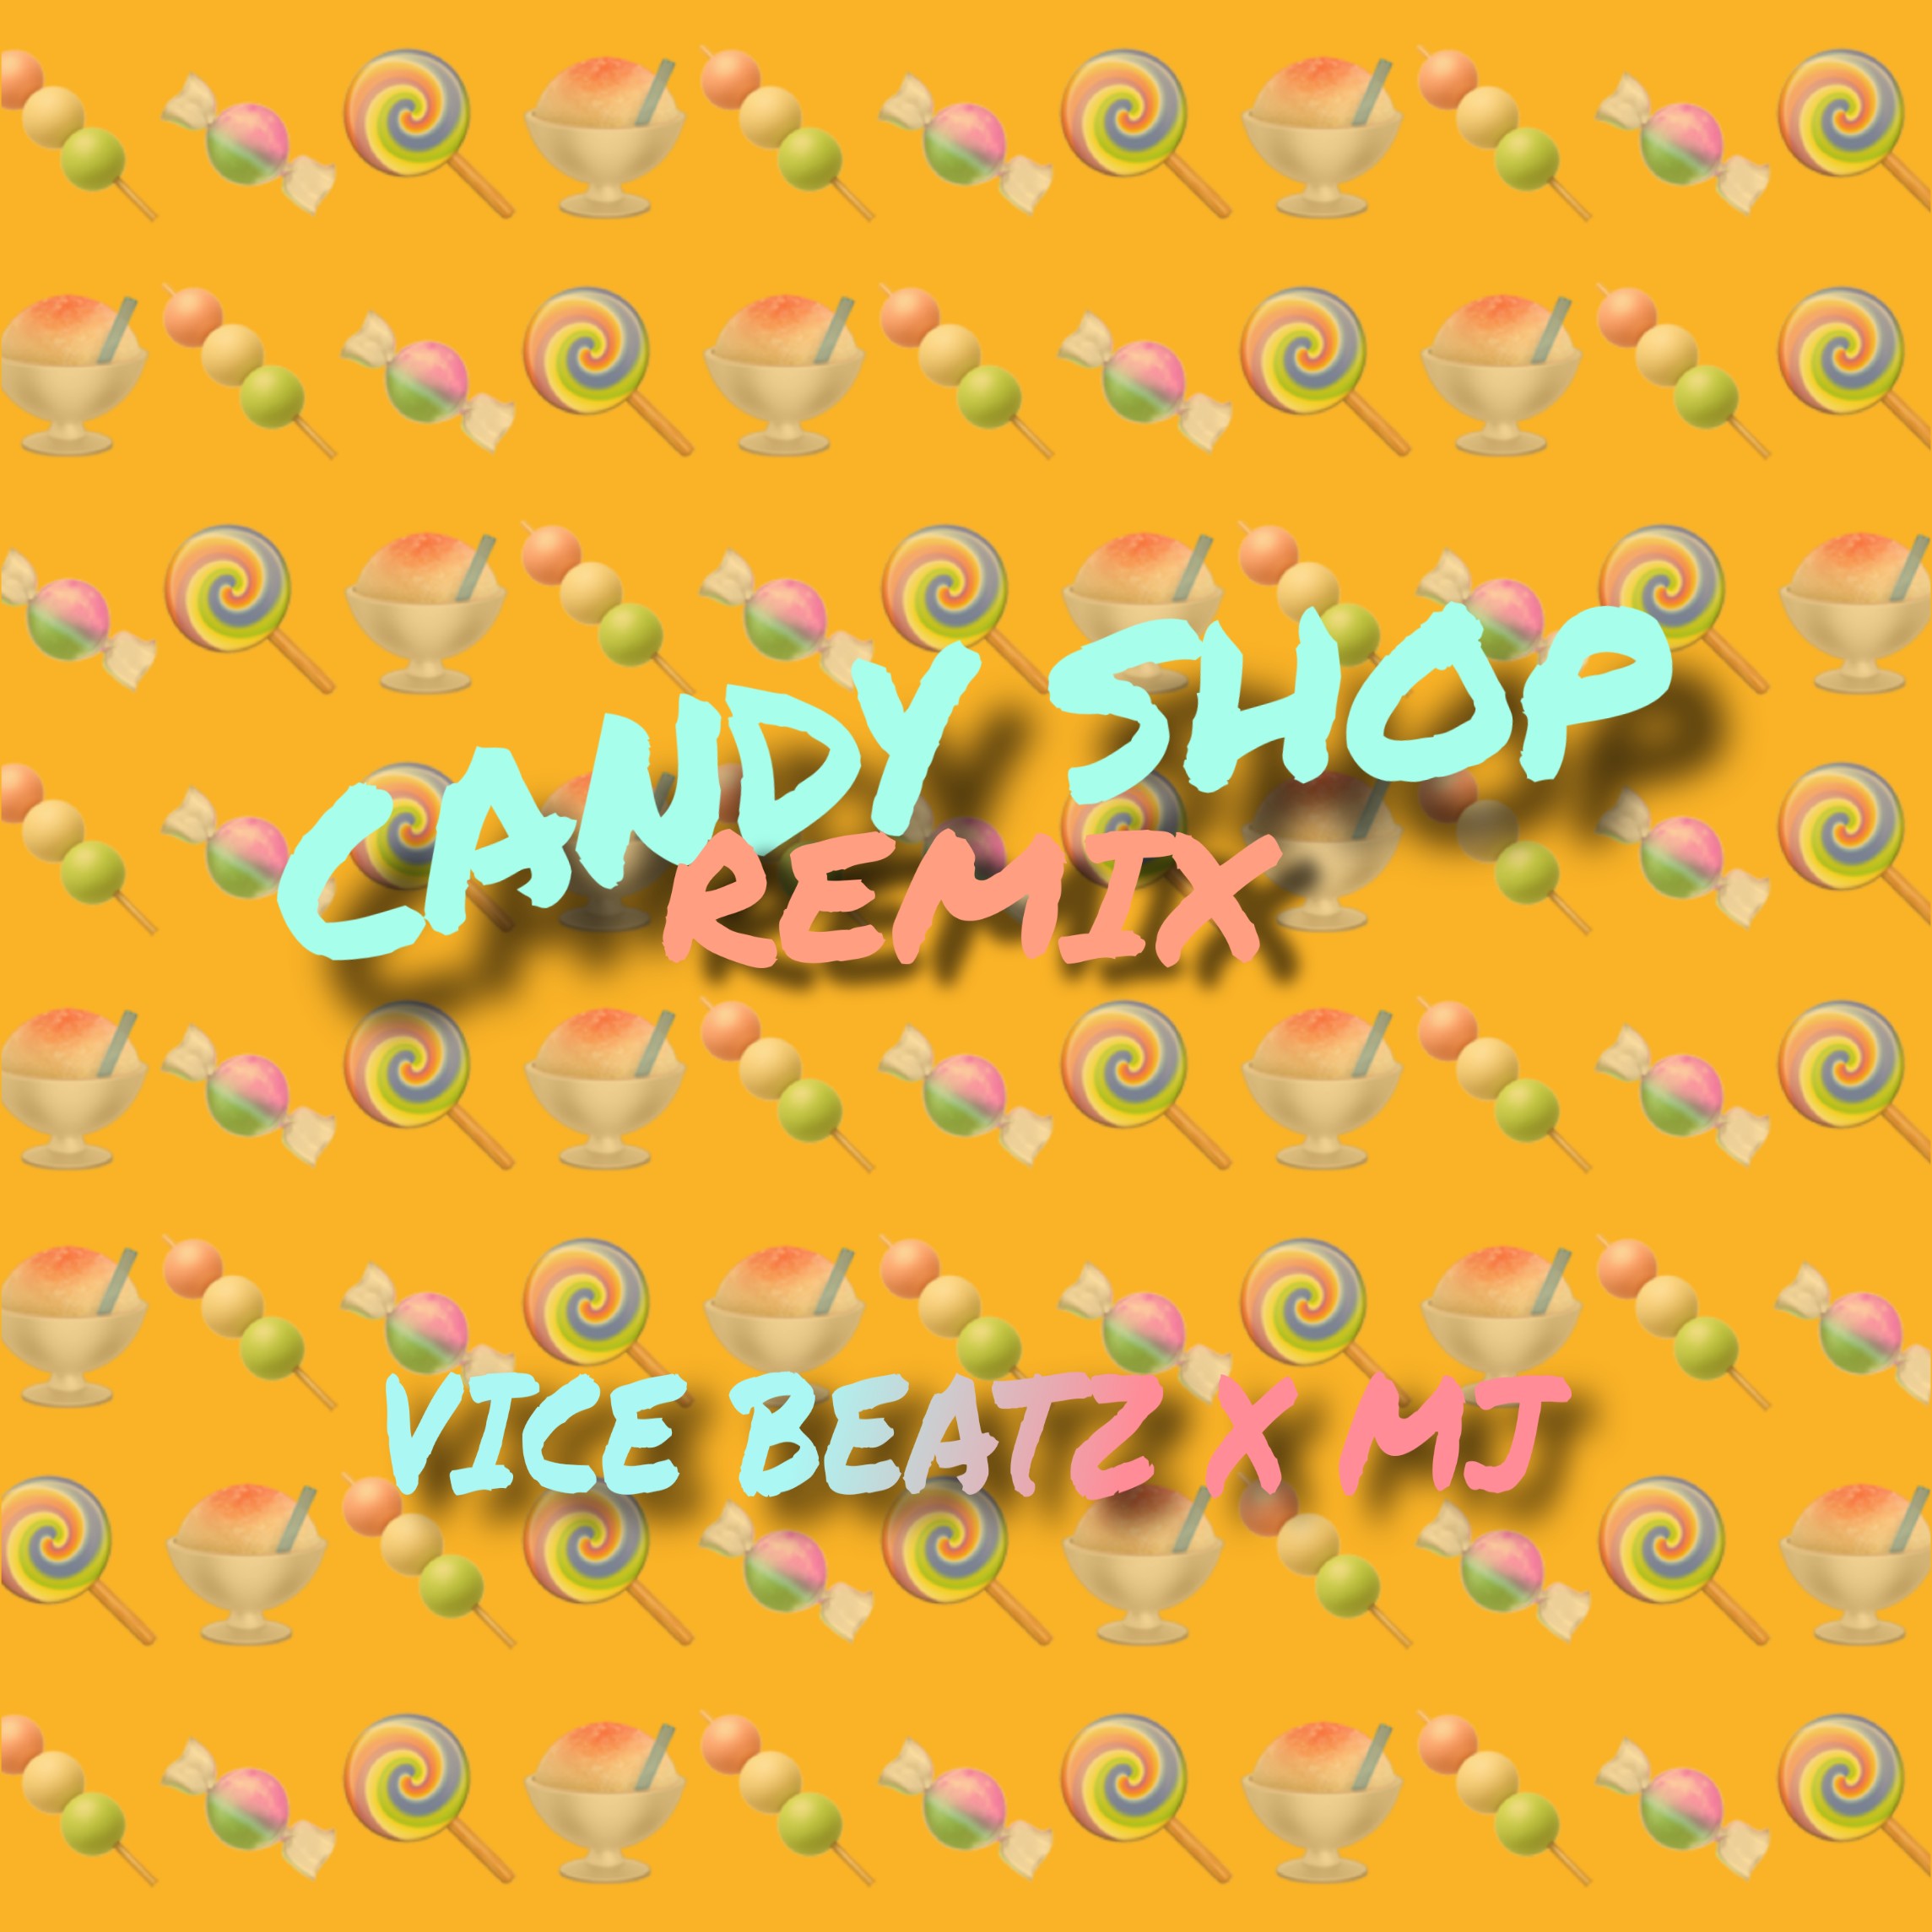 Κατεβάστε Candy Shop (Vice_Beatz & MJ Remix)_ CLICK ON 'BUY' For Free Download